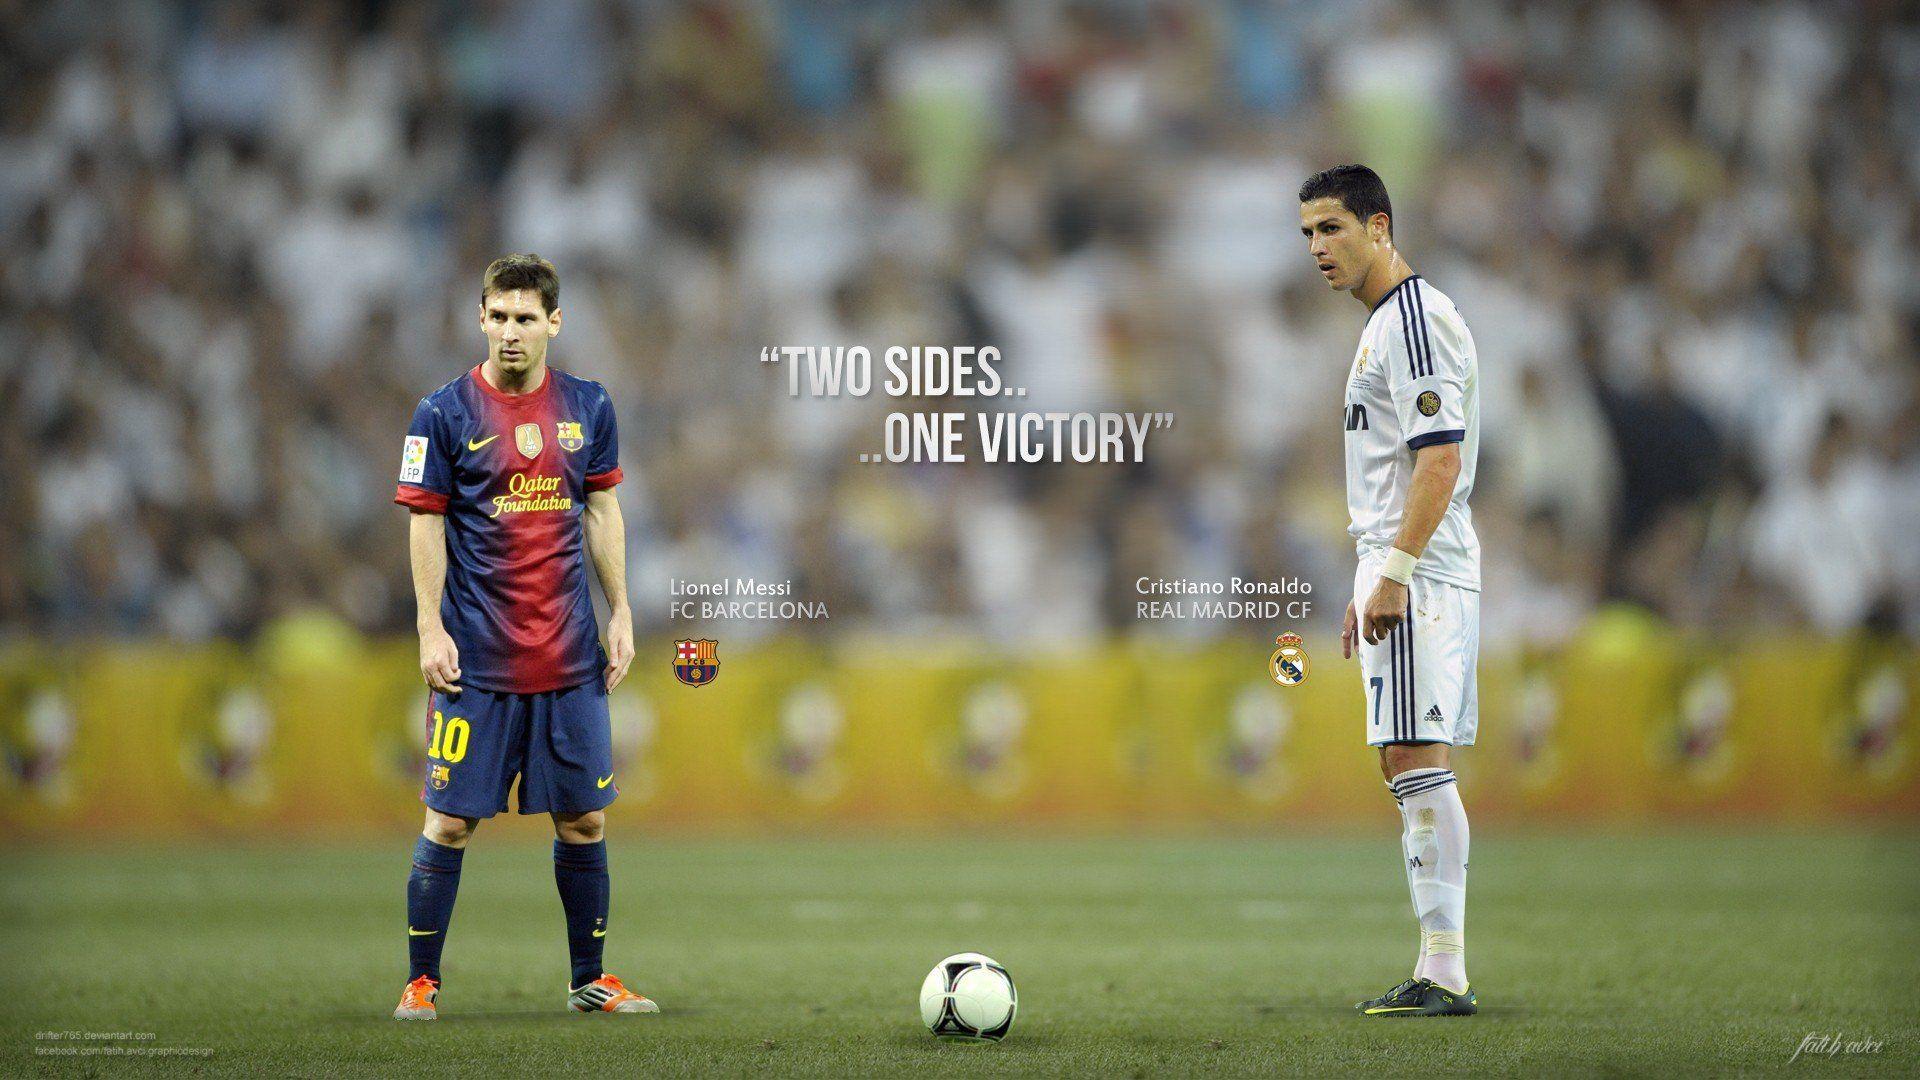 Lionel Messi VS Cristiano Ronaldo Wallpaper